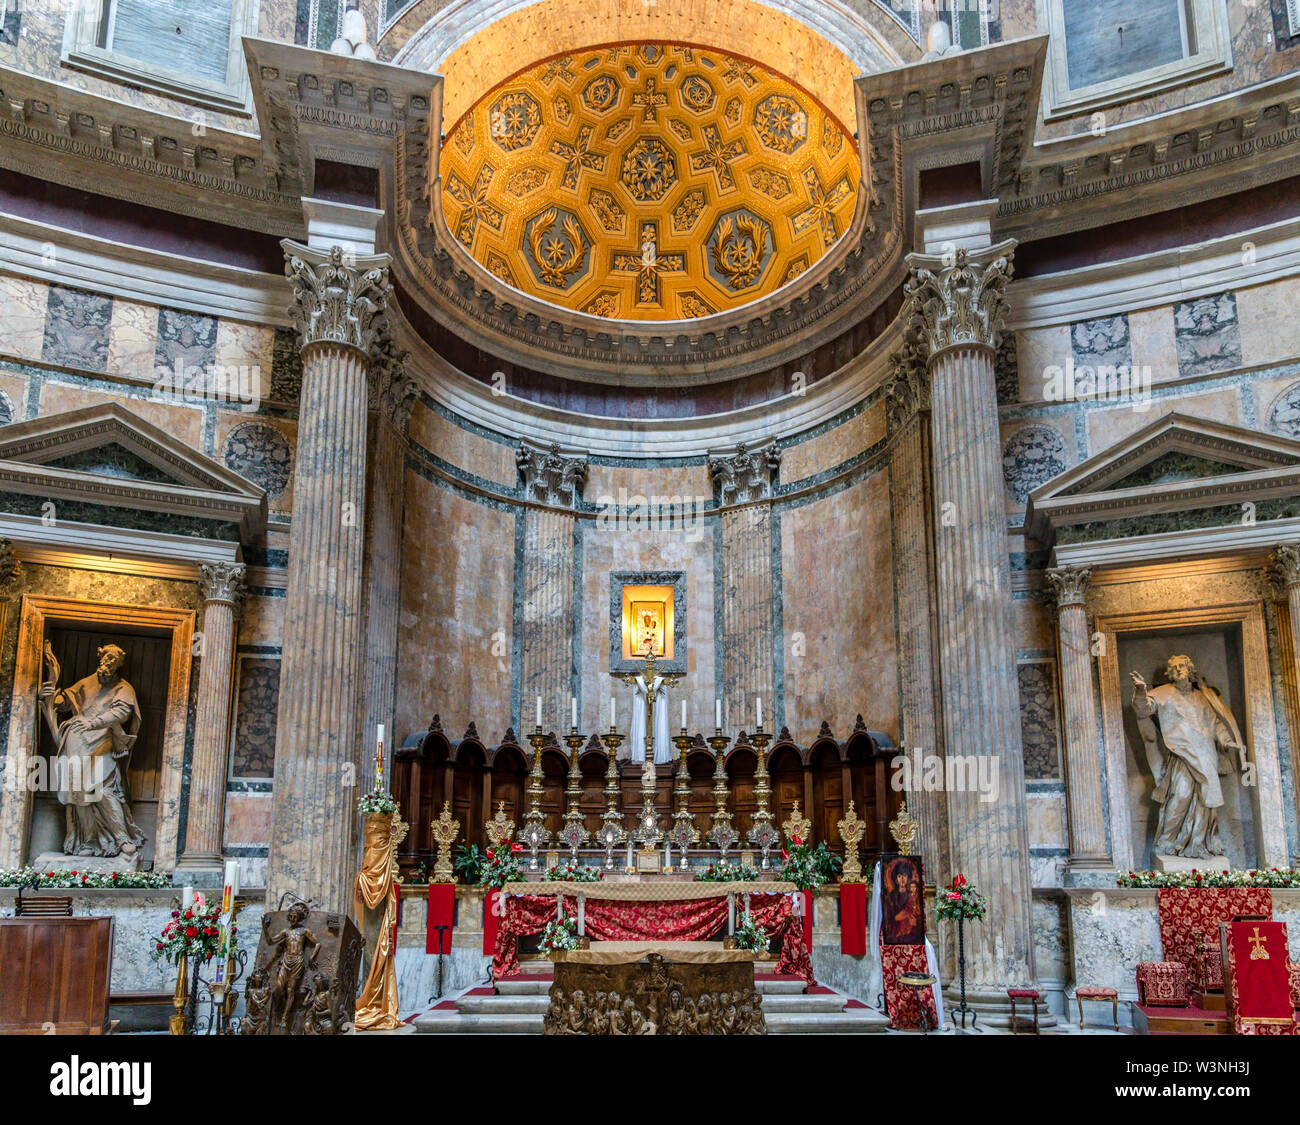 Altare dentro il Pantheon - Roma, Italia Foto Stock